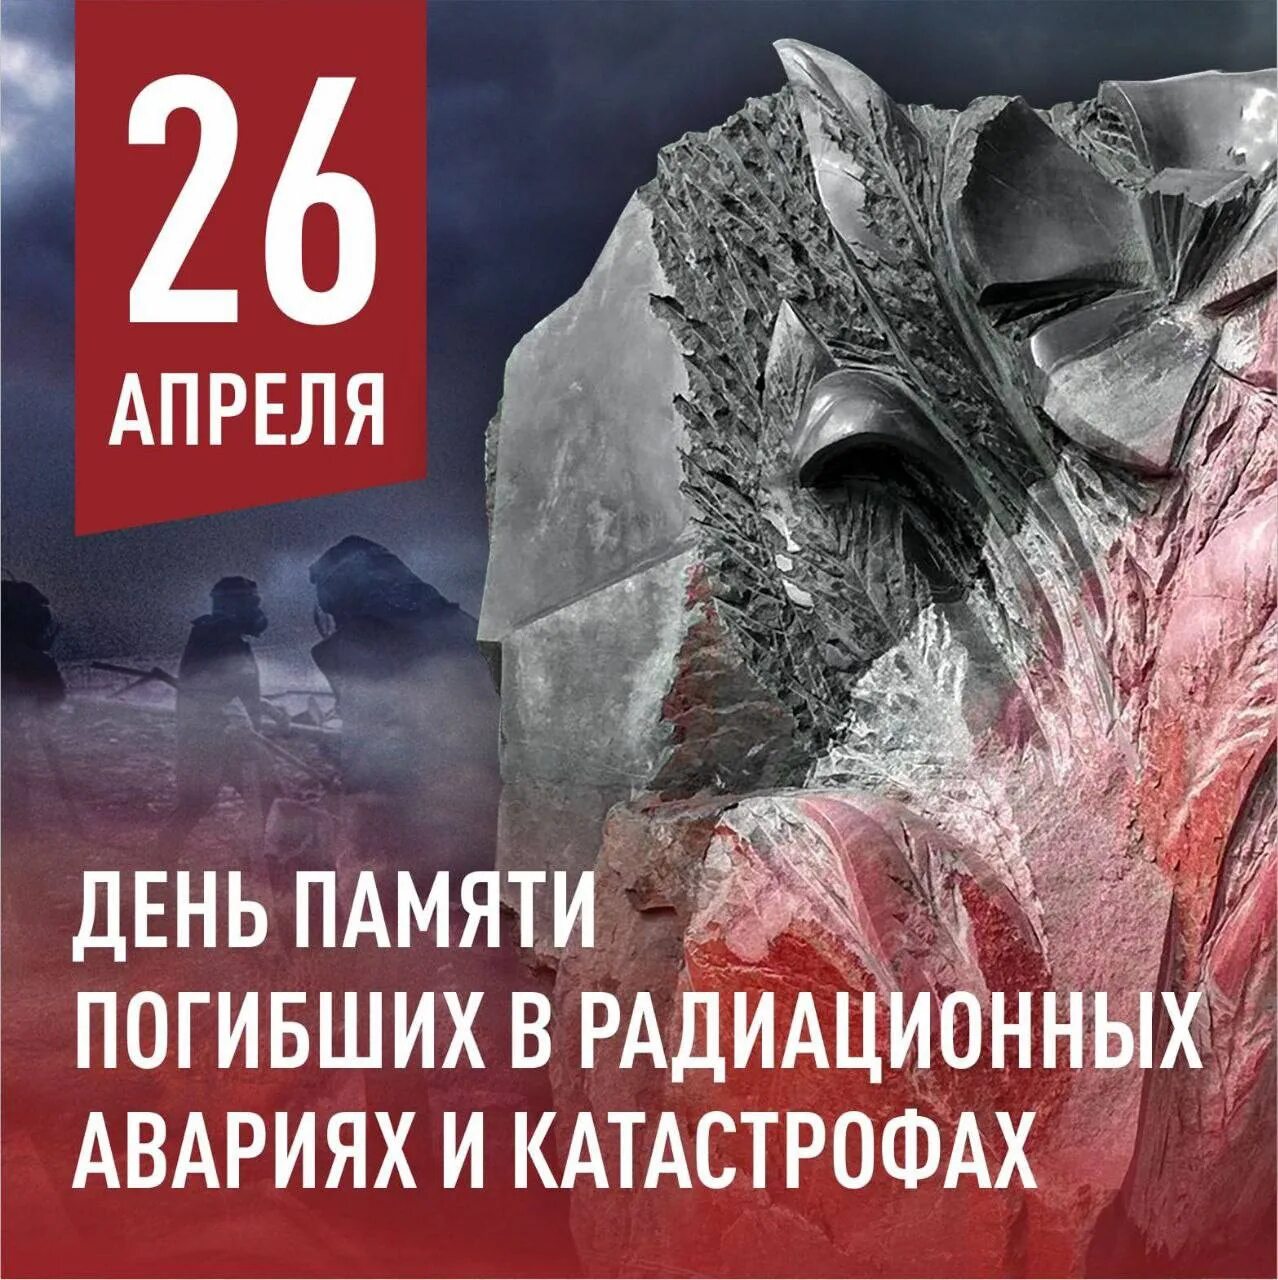 17 апреля последний. 26 Апреля день памяти погибших в радиационных авариях и катастрофах. 26 Апреля день памяти. День памяти погибших в радиационных катастрофах. Чернобыль день памяти.